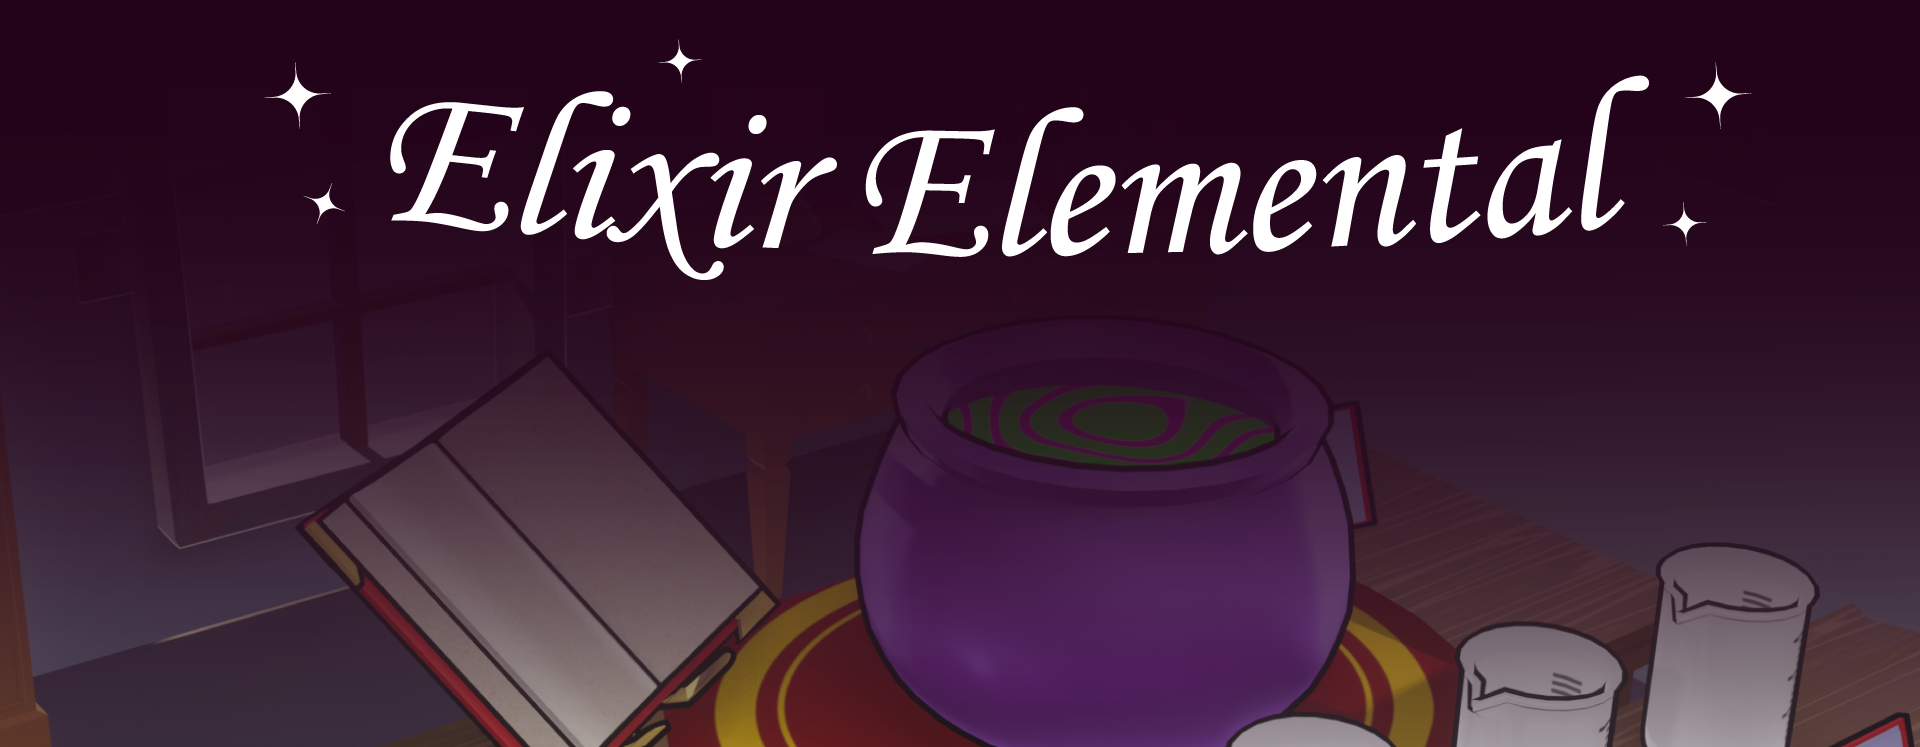 Elixir Elemental